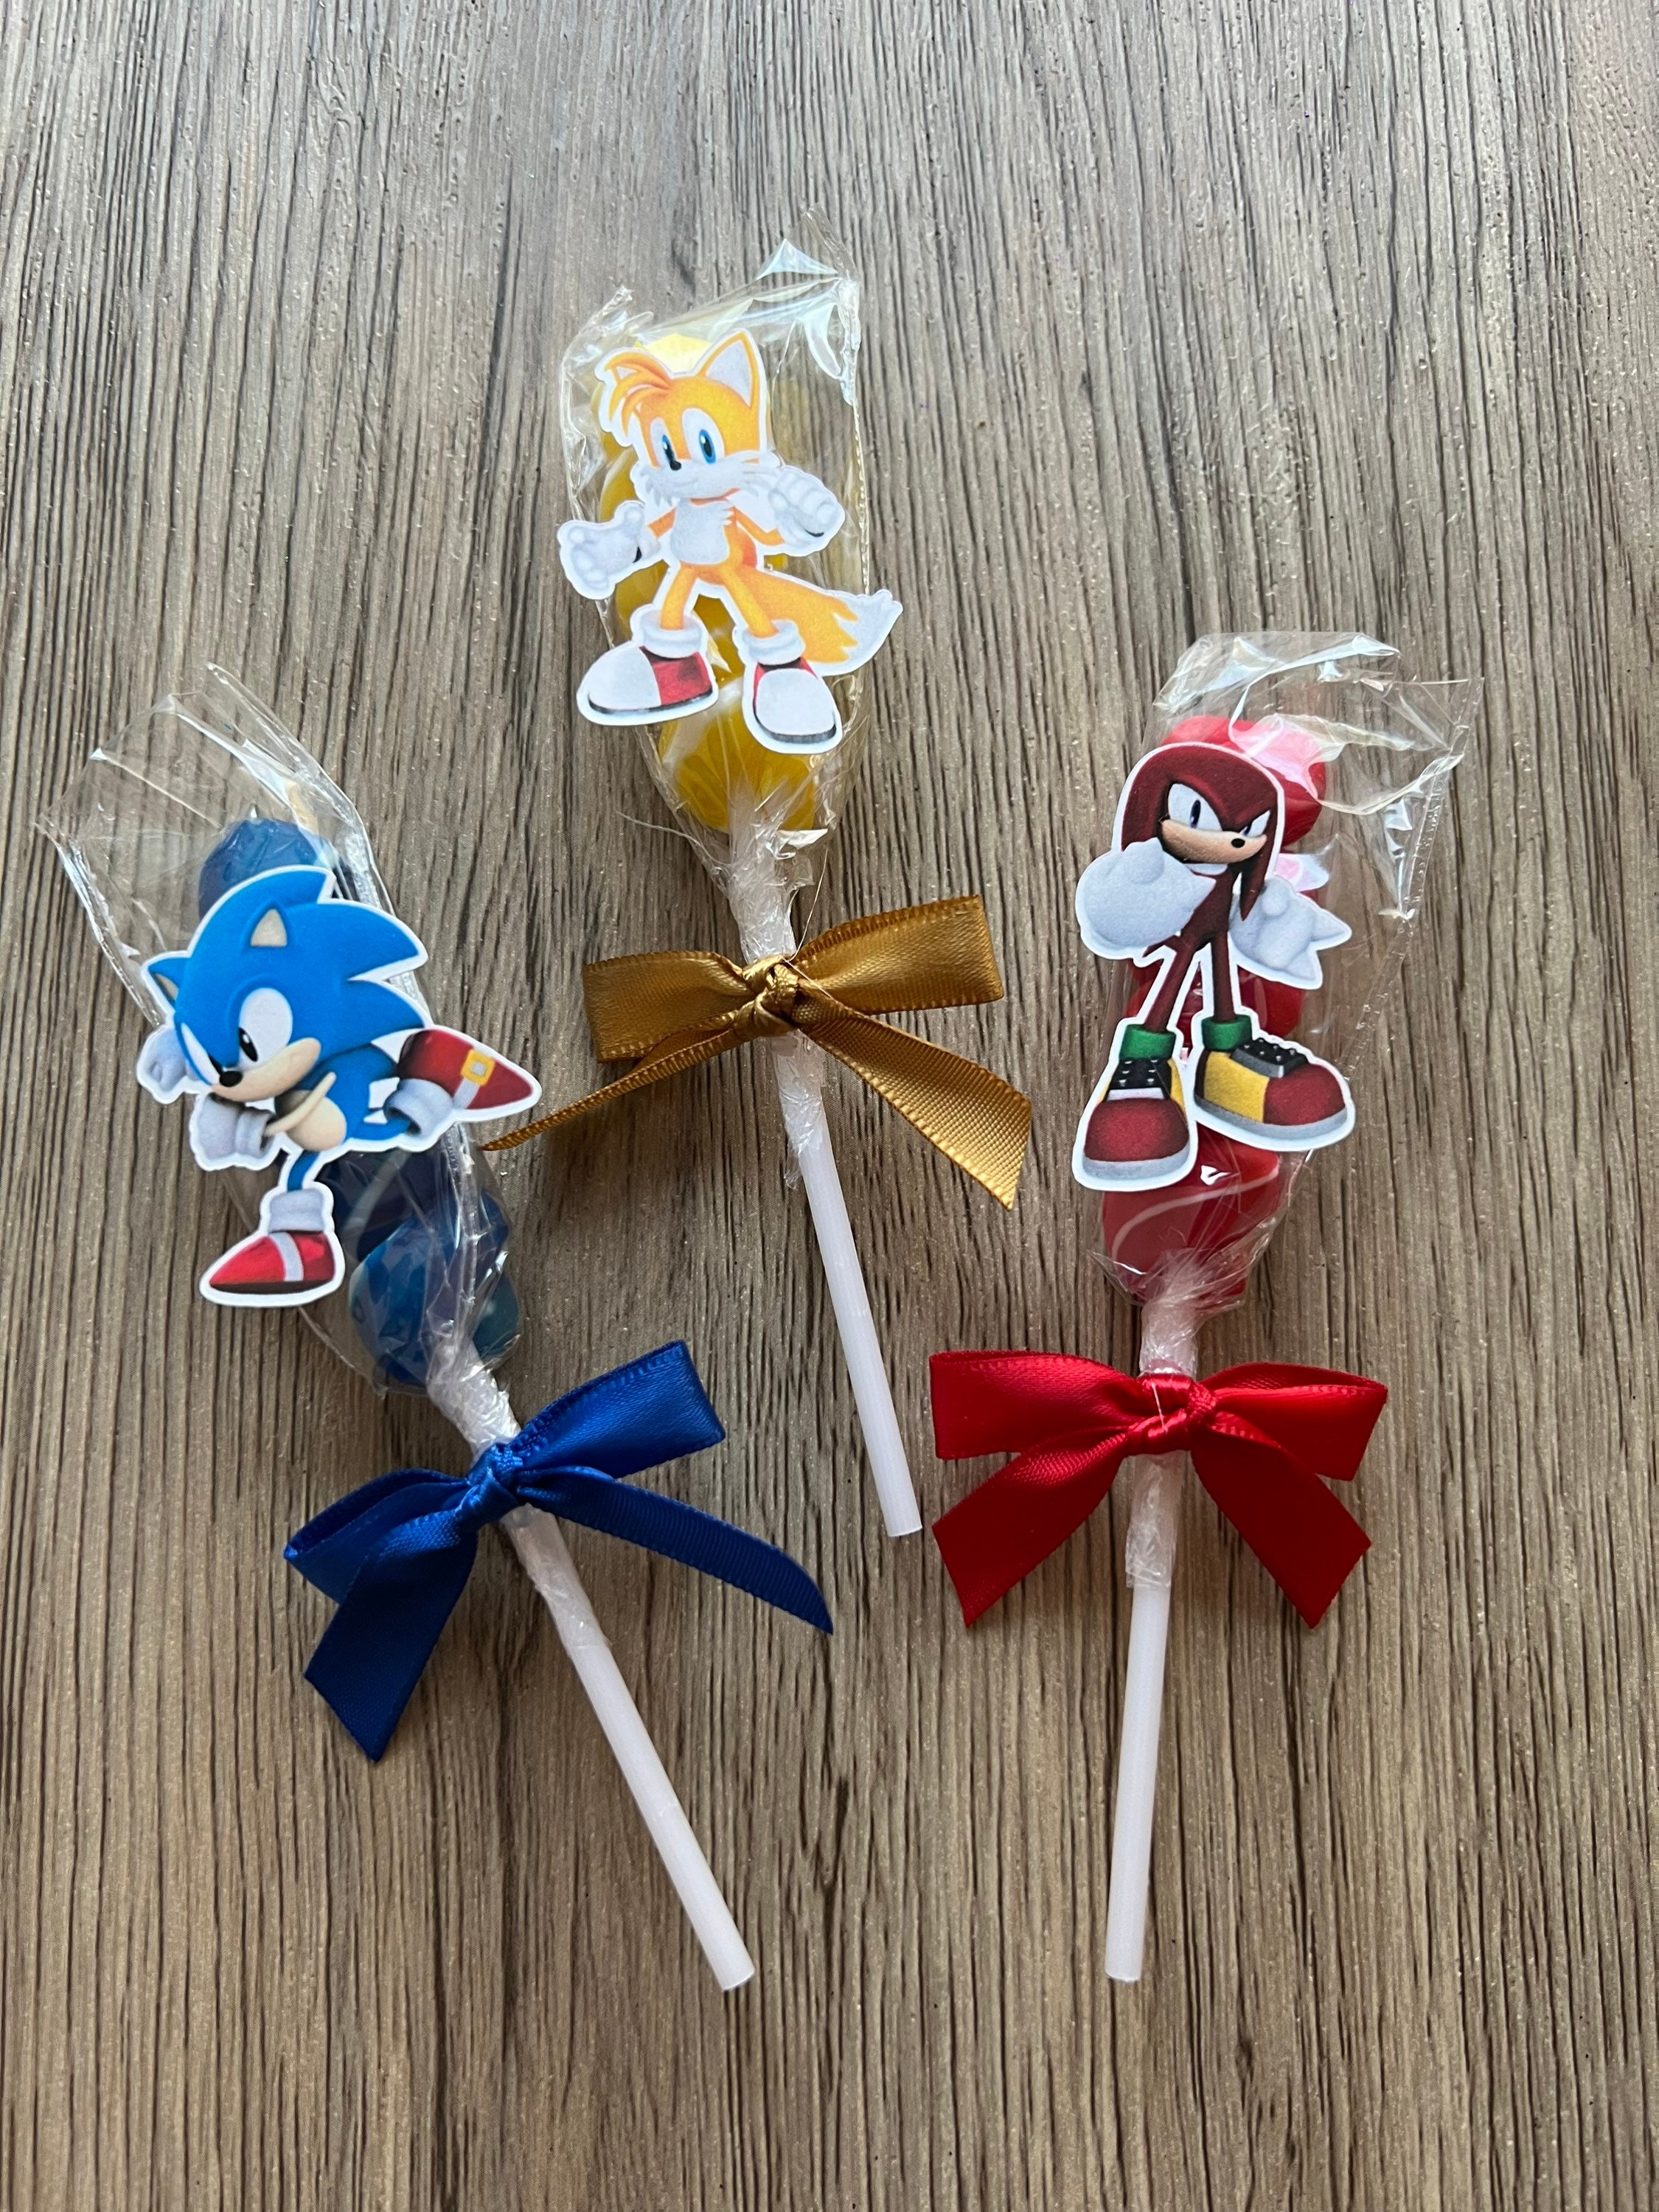 Decoration Sonic Anniversaire, Sonic Party Decoration Supplies